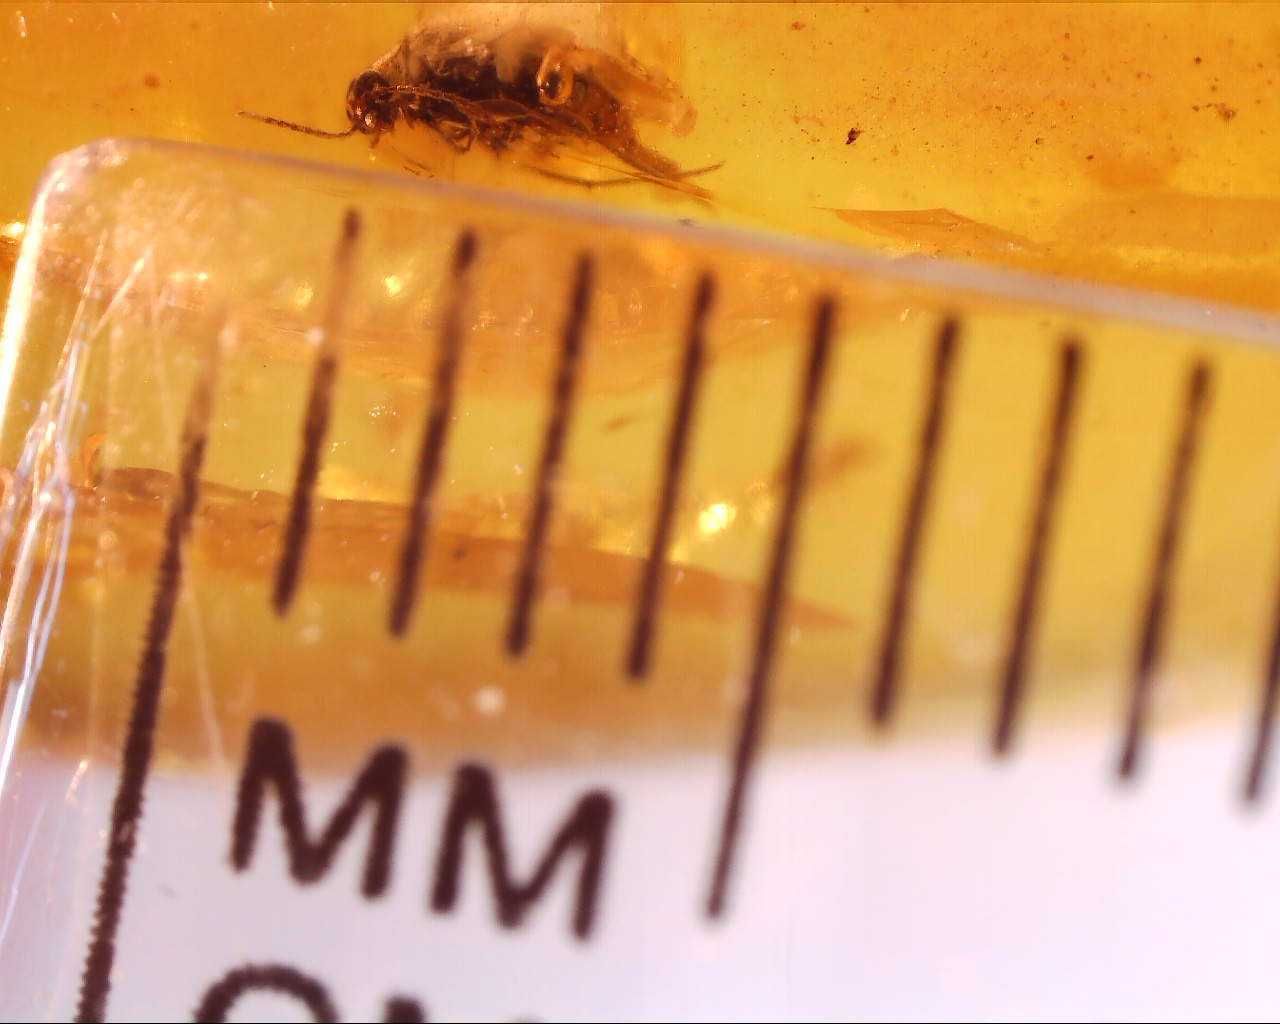 Wymarły chrząszcz bursztyn inkluzja z otworem do pobrania DNA ?